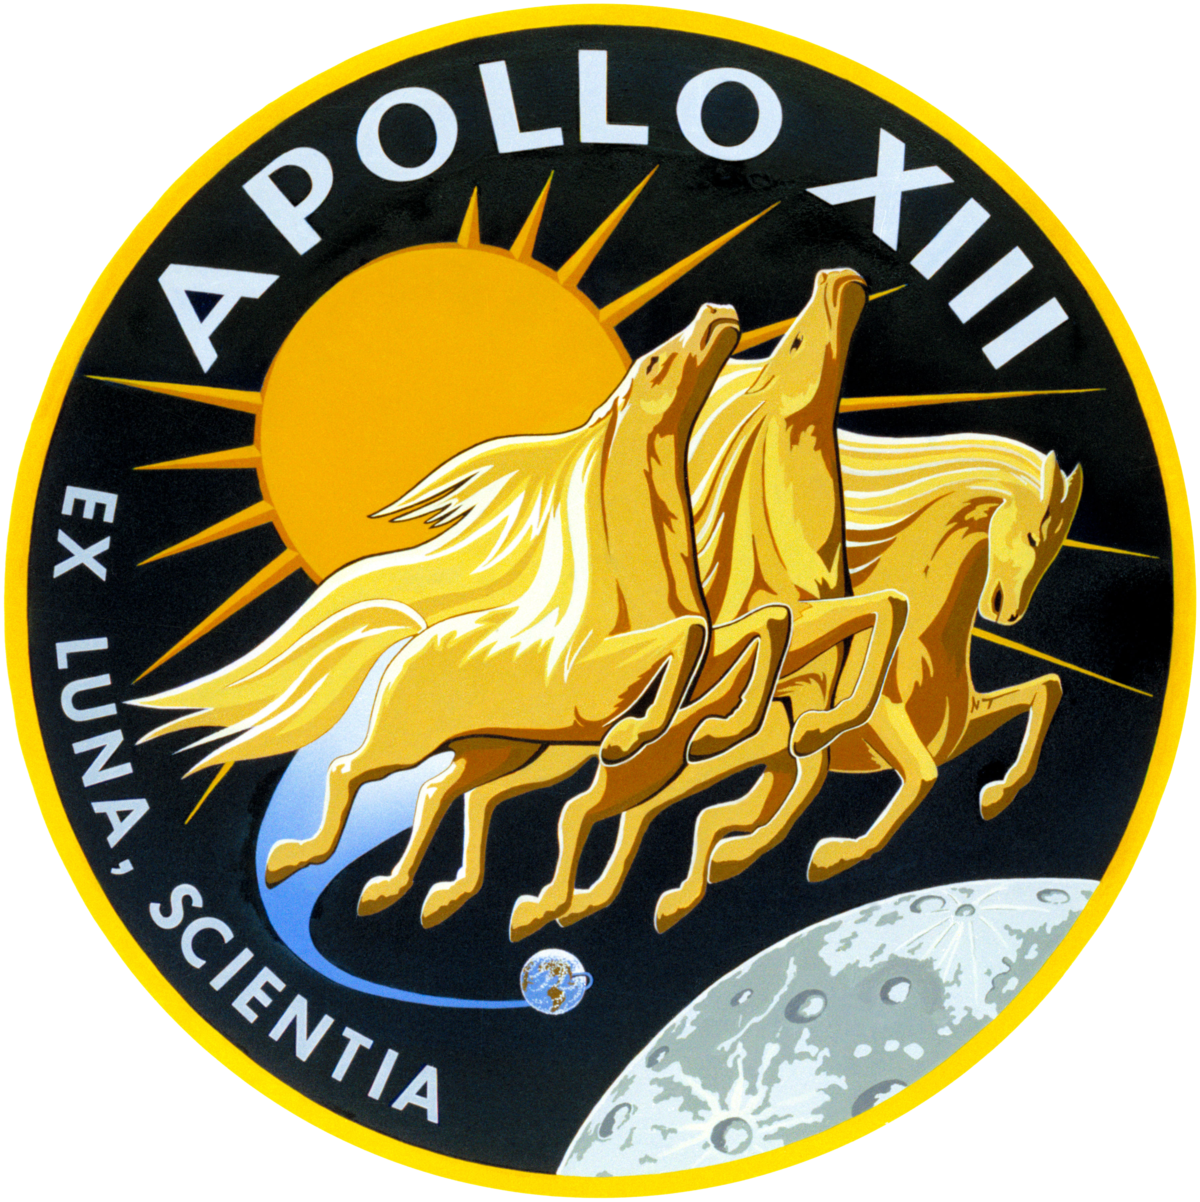 Apollo 13 – Wikipedia